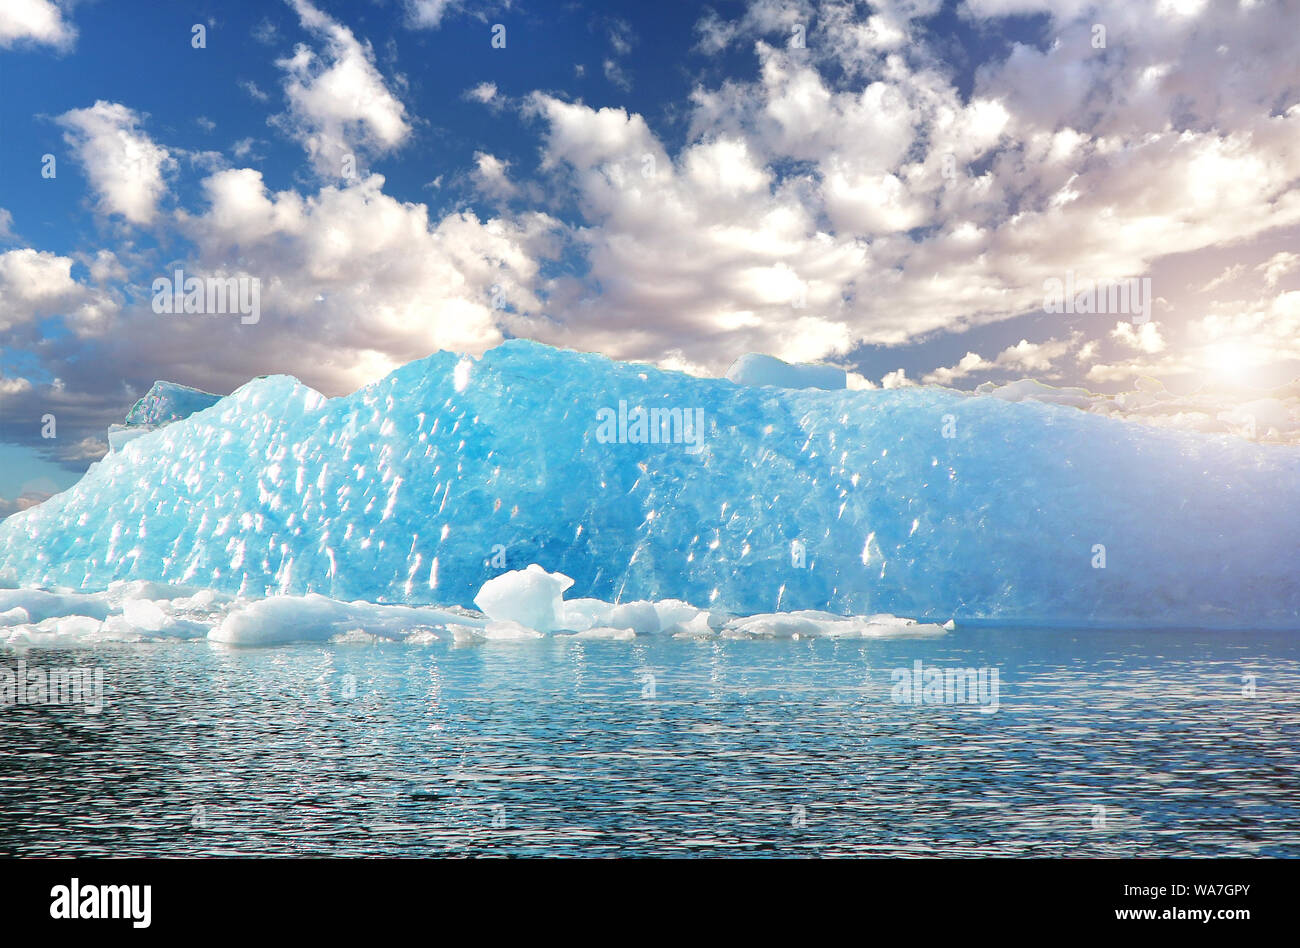 Argentina, i ghiacciai del parco nazionale, iceberg del ghiacciaio Spegazzini Foto Stock